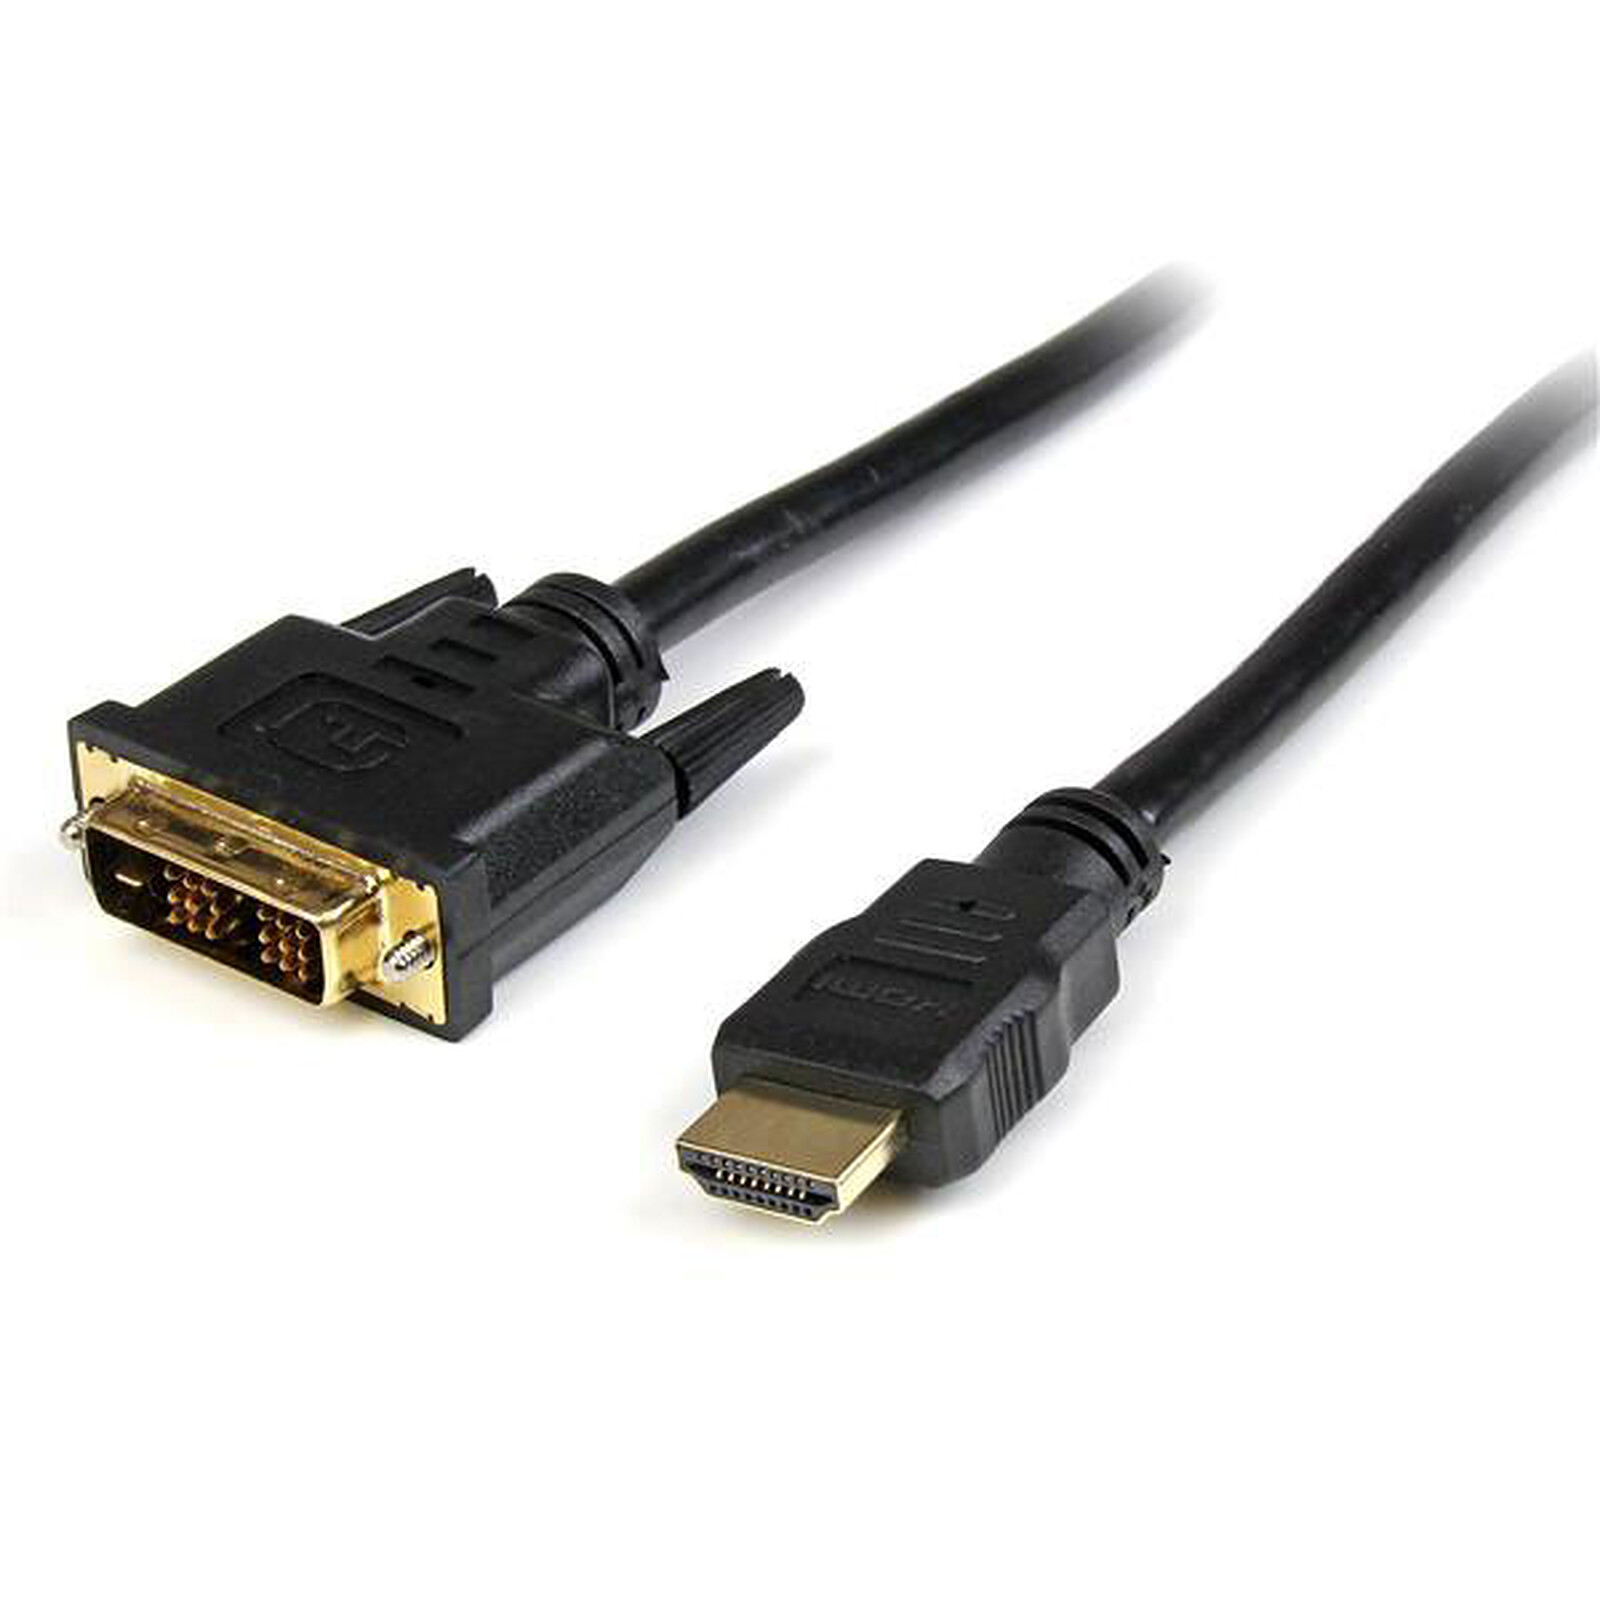 Adaptateur DVI-D Femelle vers HDMI mâle - Câble DVI Générique sur